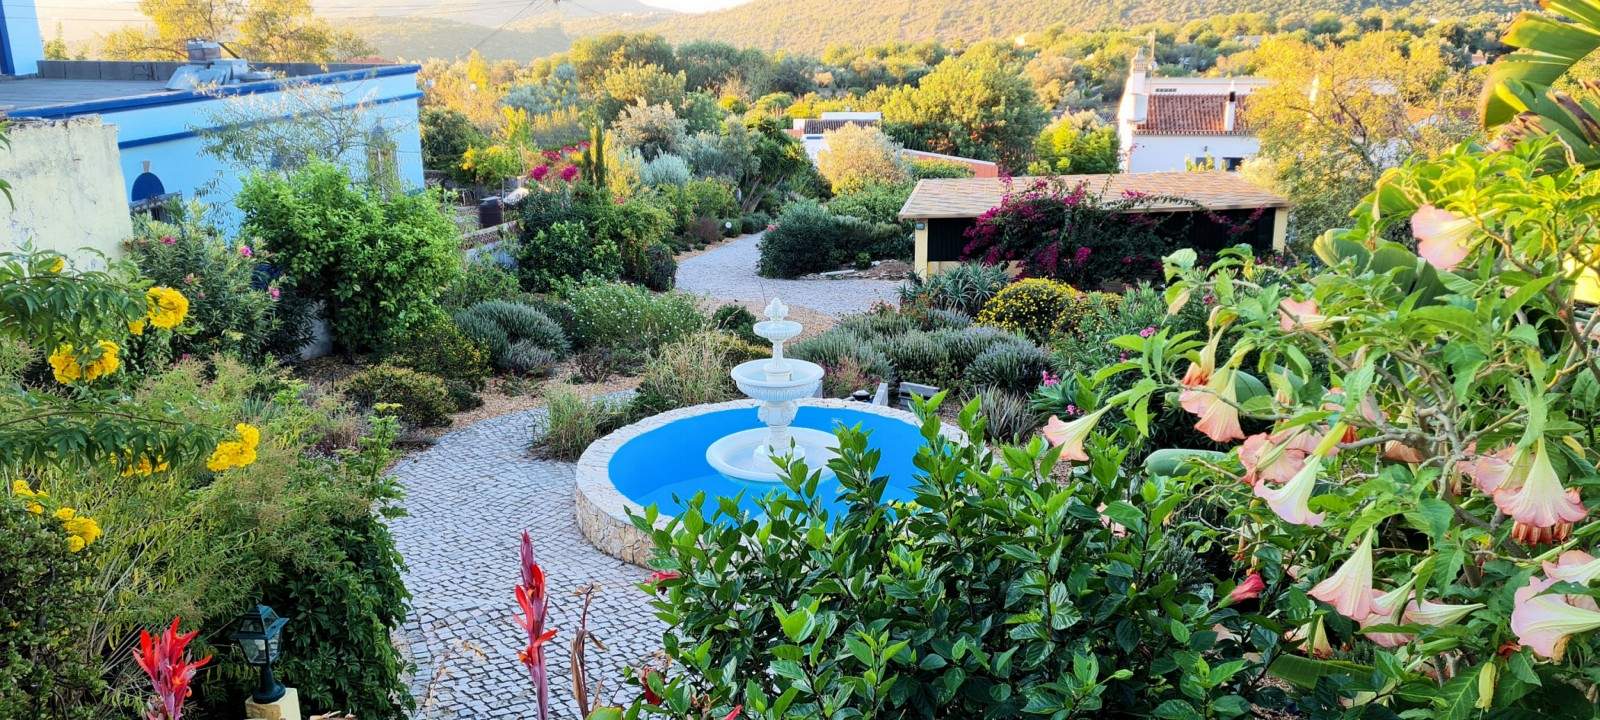 Moradia V2 com jardim, para venda, em São Brás de Alportel, Algarve_203375